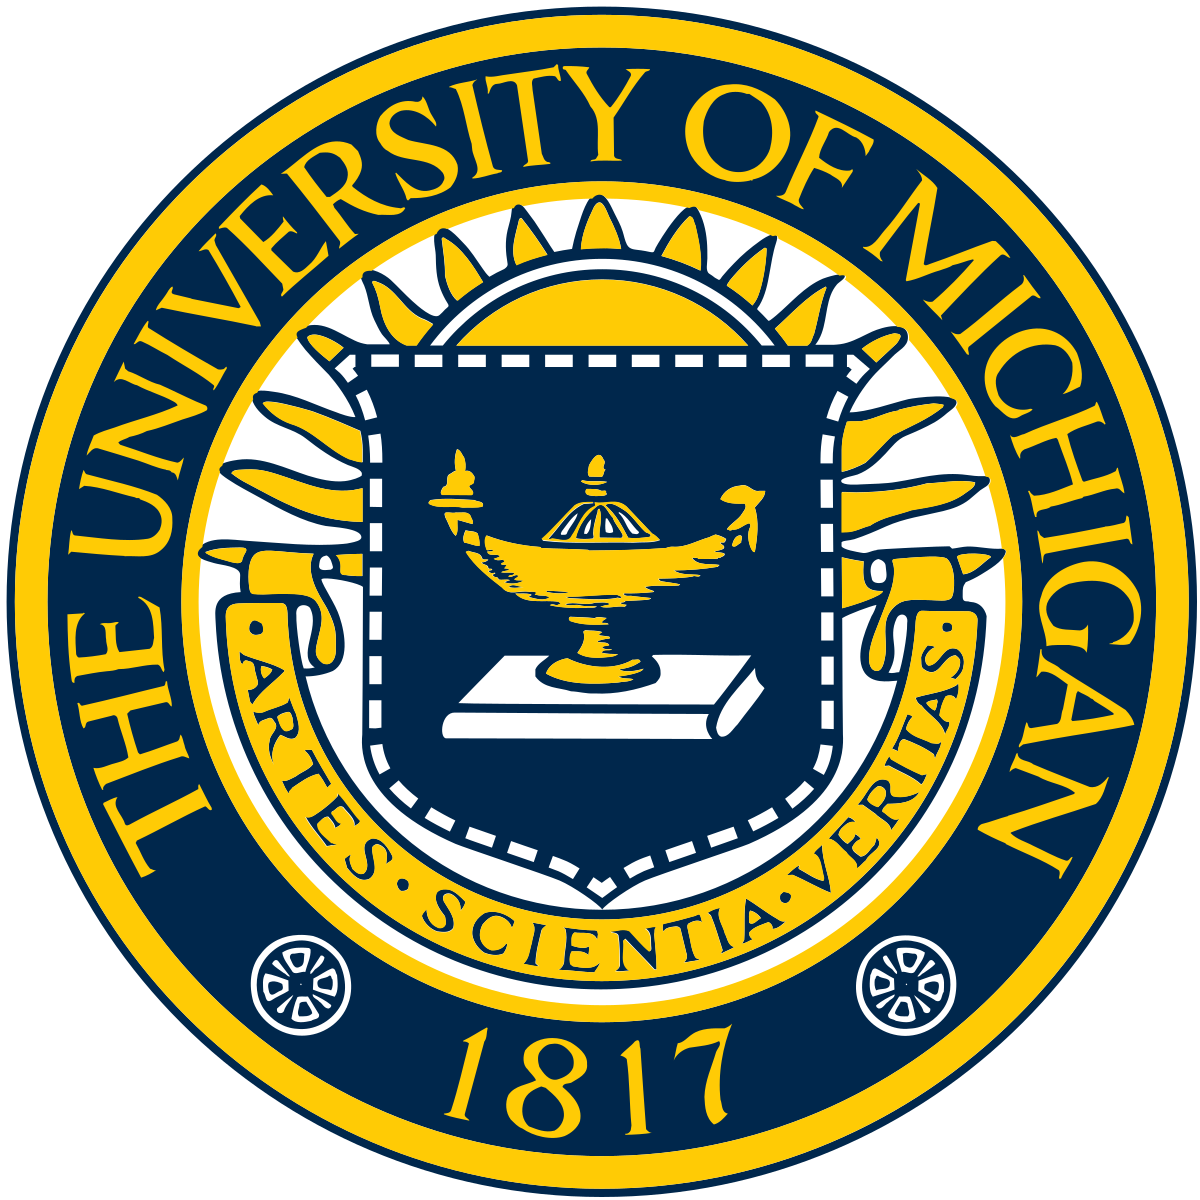 University of Michigan - Wikipedia